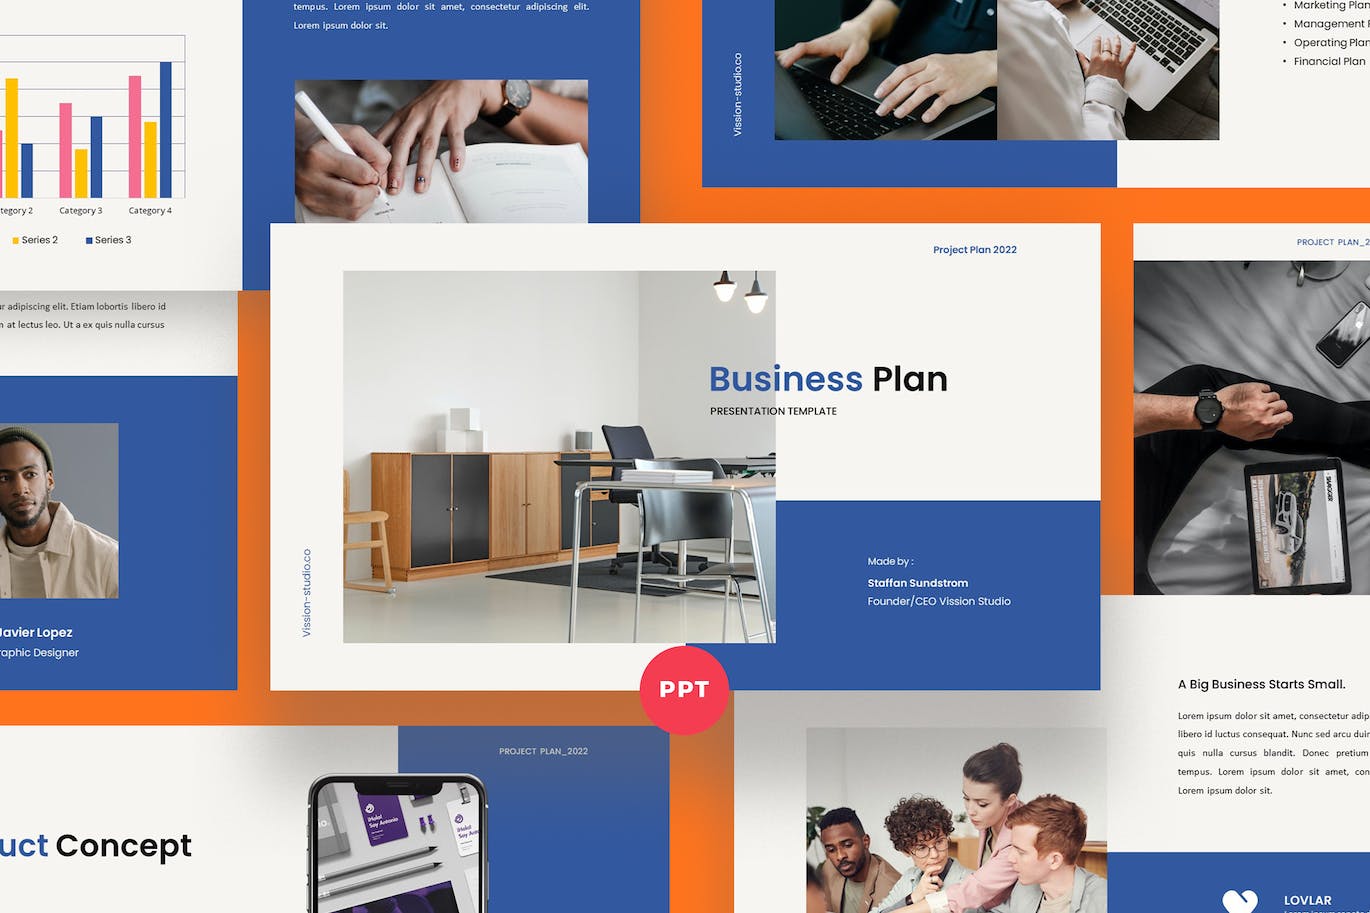 高端商务风企业计划PPT素材 Business Plan PowerPoint Template 幻灯图表 第1张